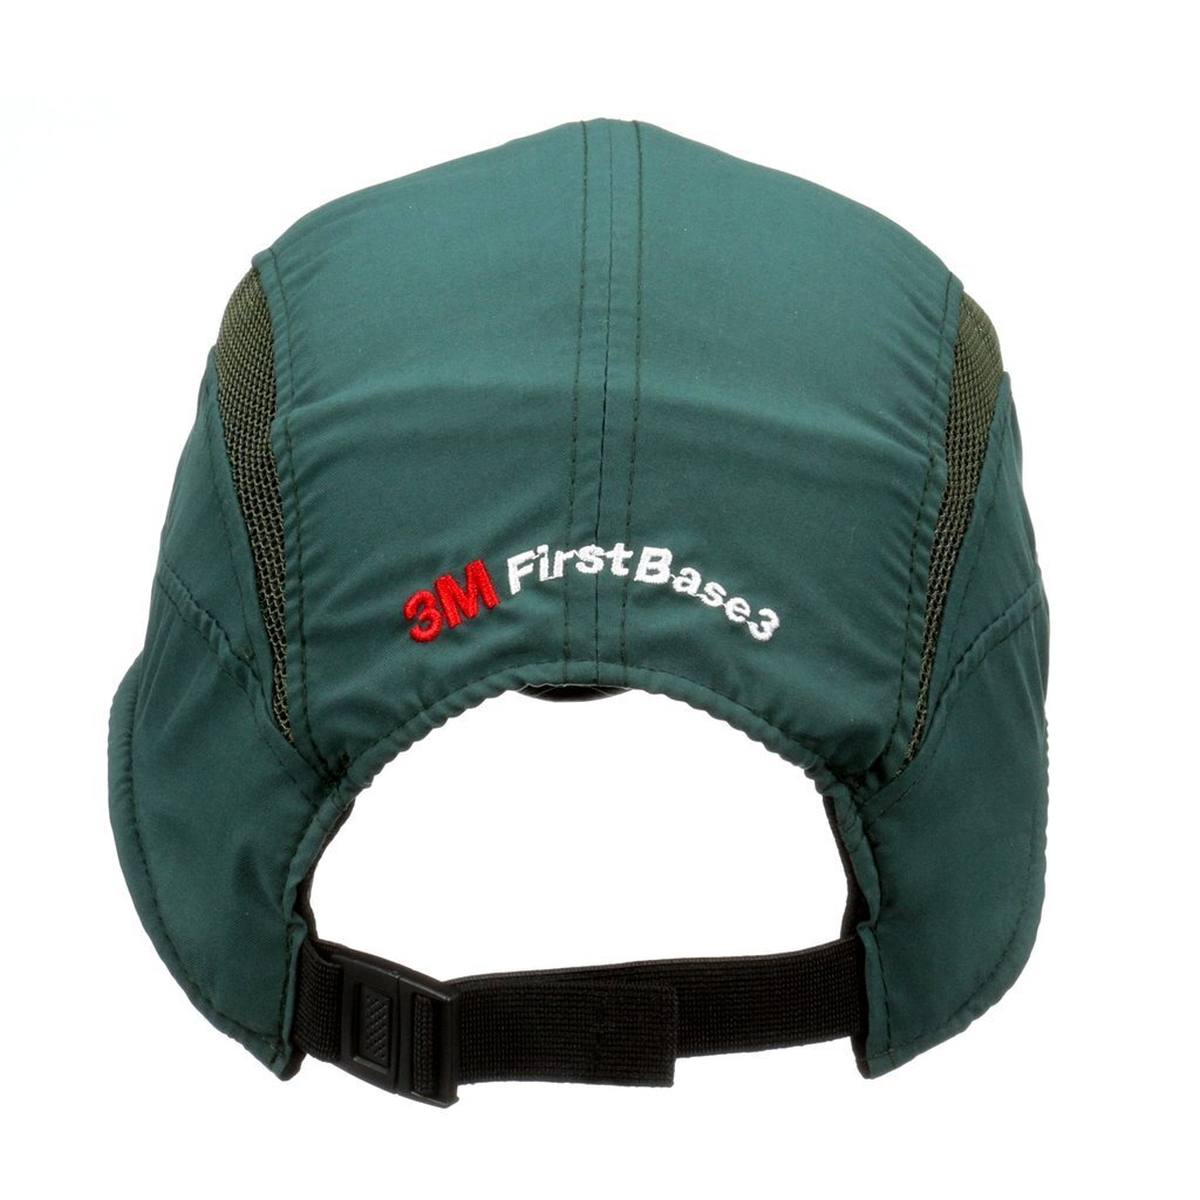 3M Scott First Base 3 Classic - berretto a botta in verde scuro - visiera accorciata 55 mm, EN812